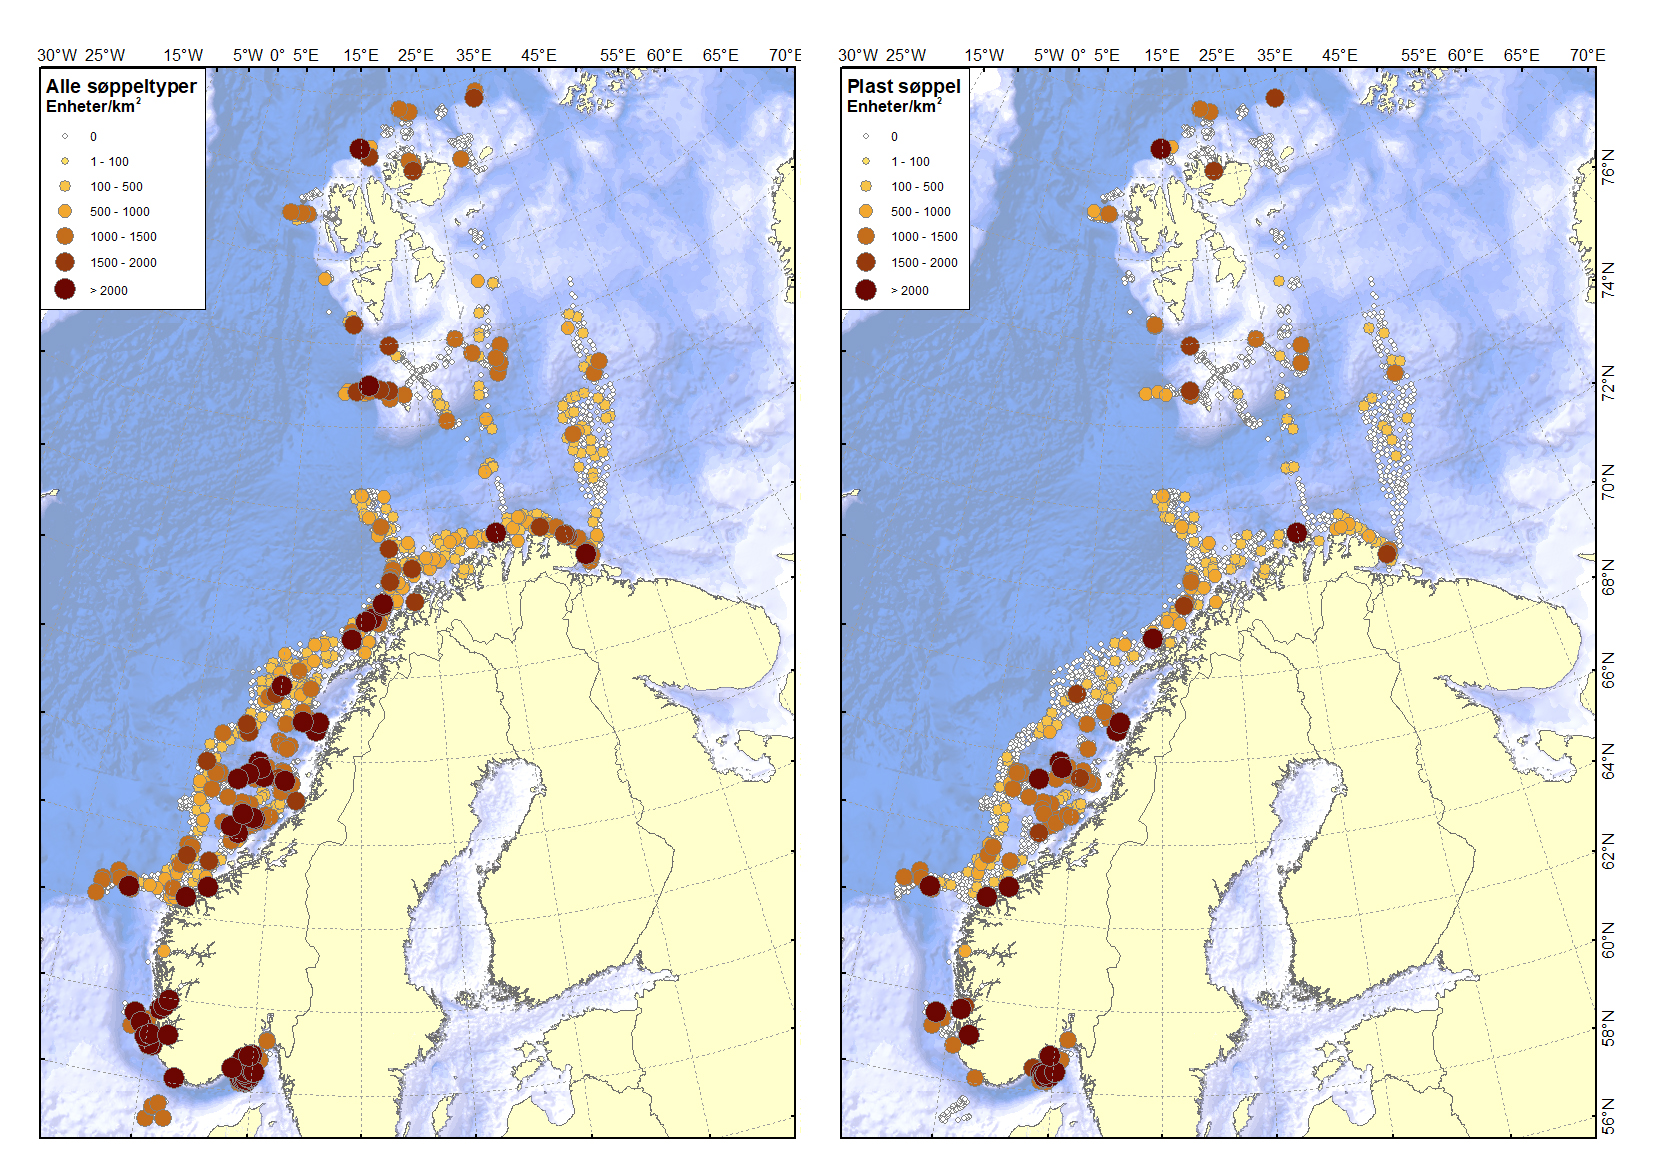 To kart av norskekysten, kart til venstre med punkt som markerer søppelfunn, kart til høyre med punkt som markerer funn av plastsøppel.